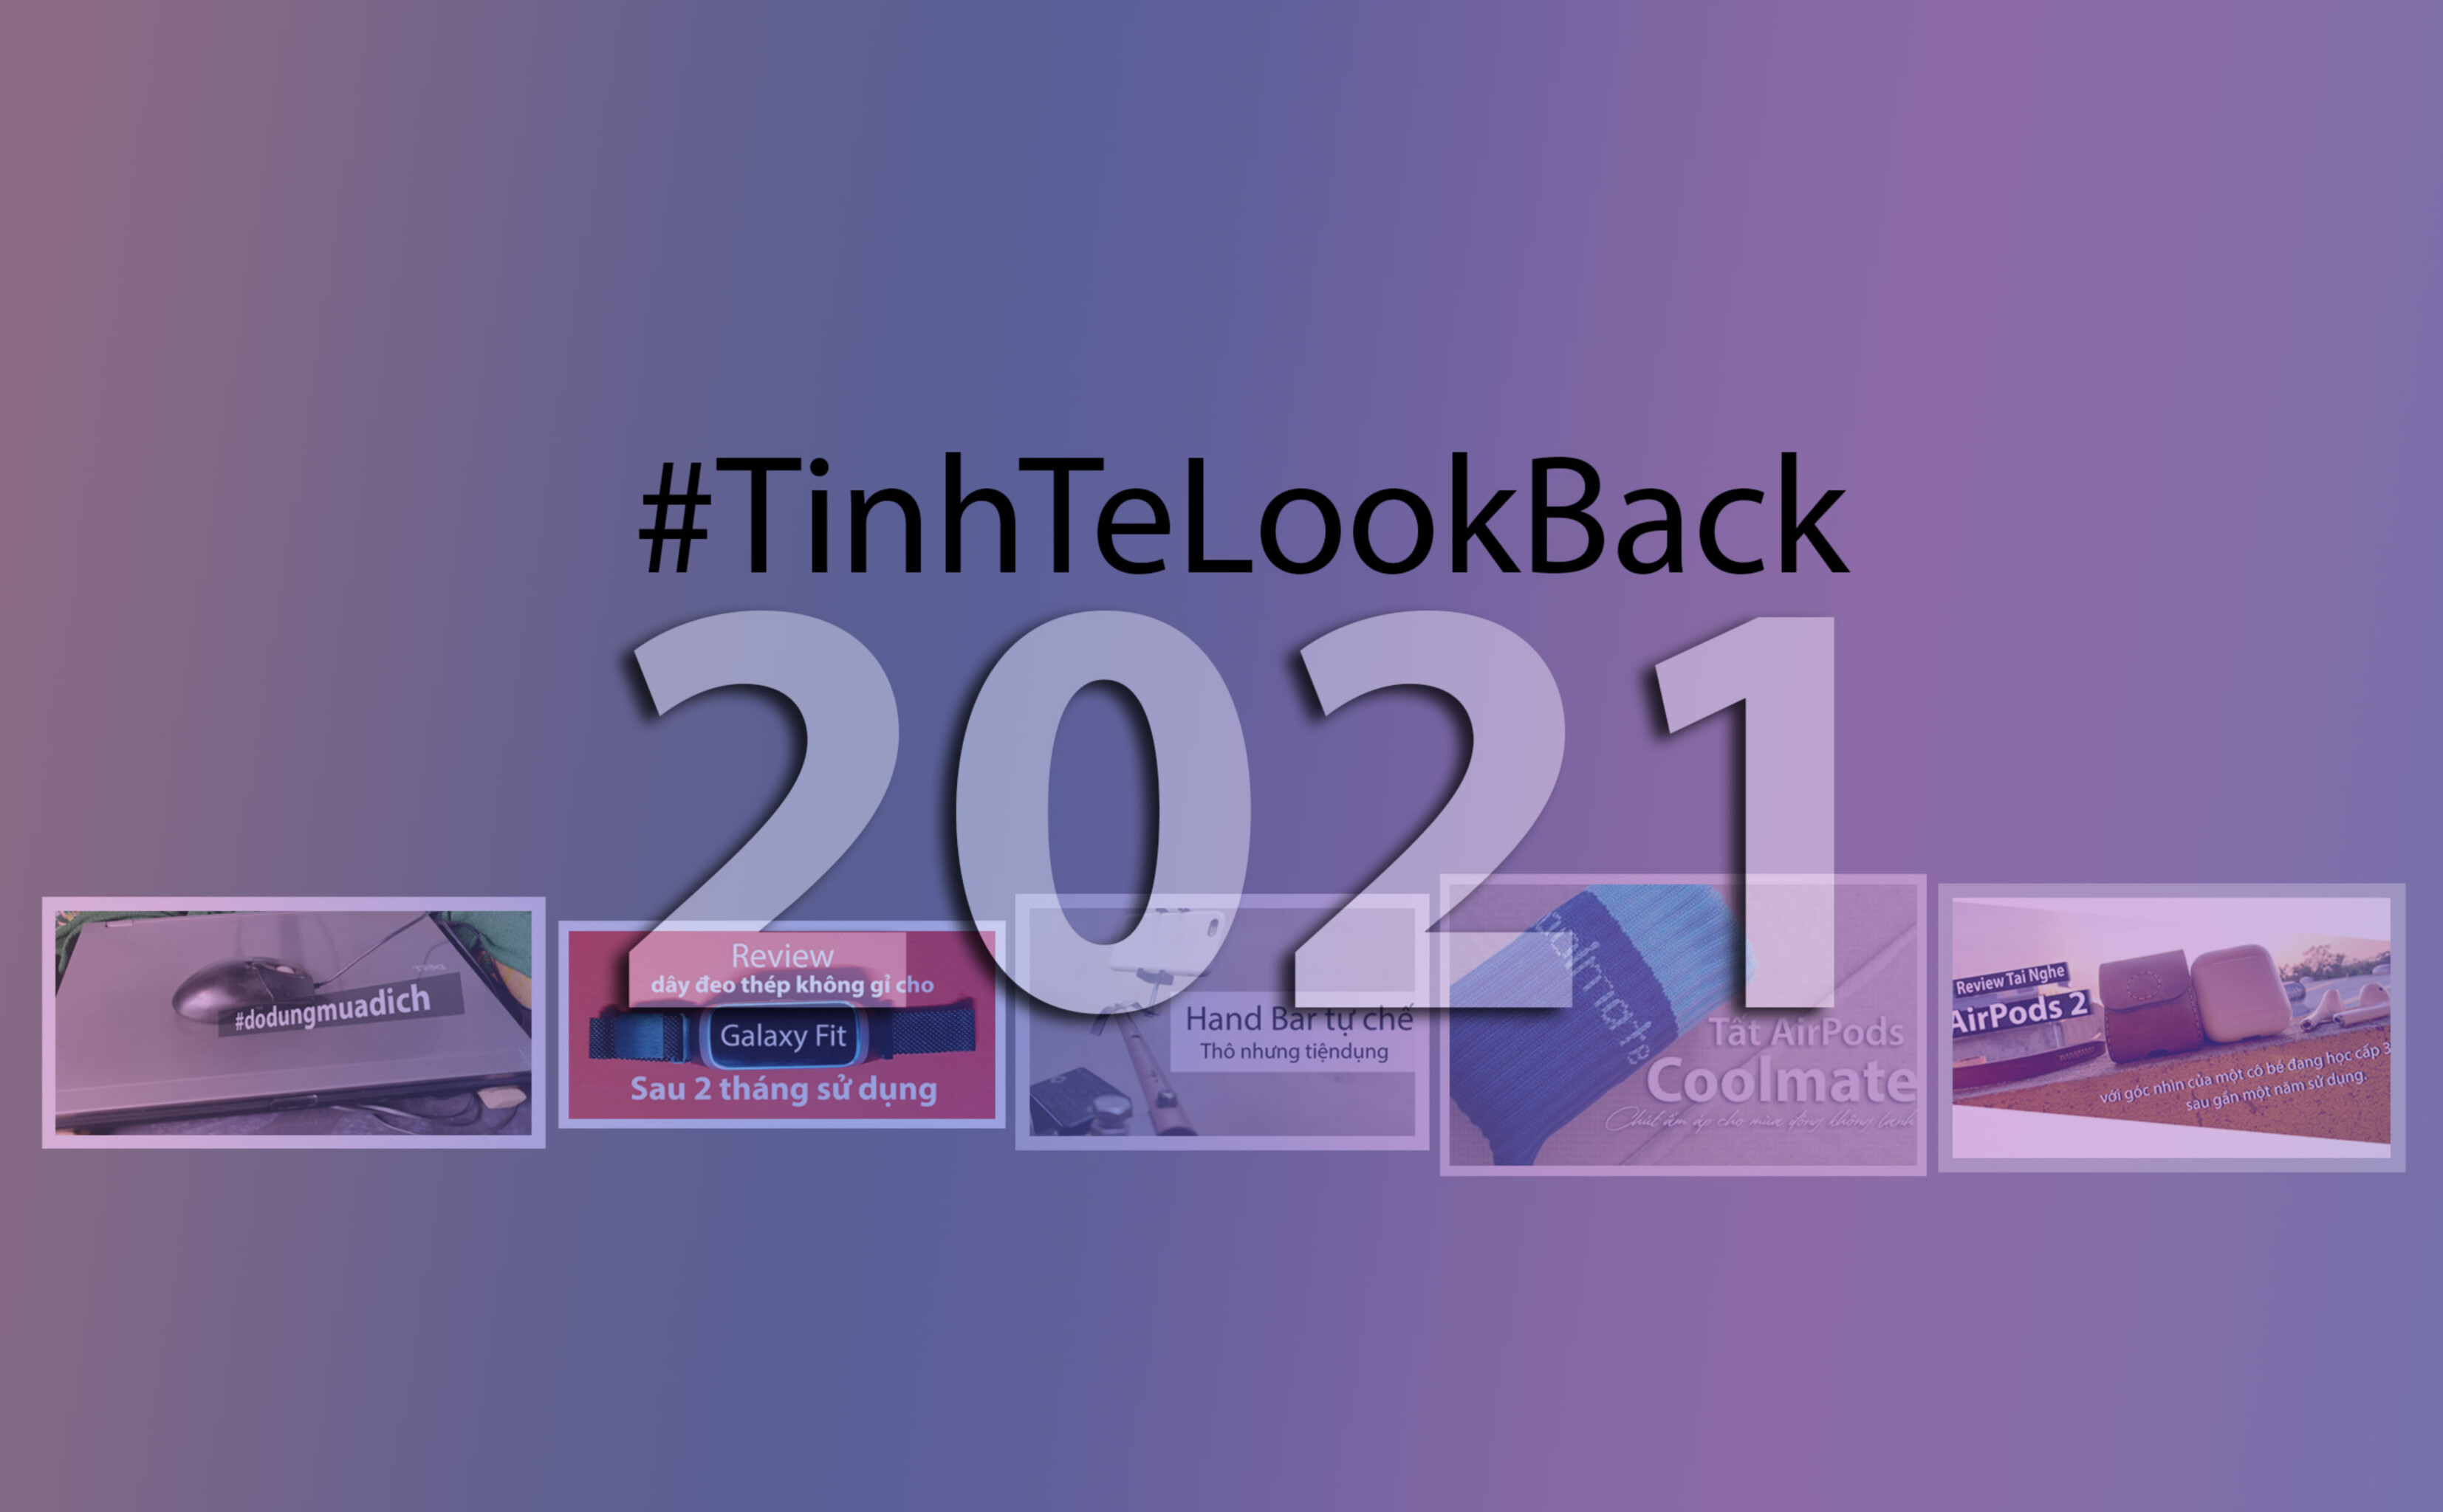 #TinhTeLookBack: Tổng hợp 5 bài review và chia sẻ mình đã viết trong năm qua